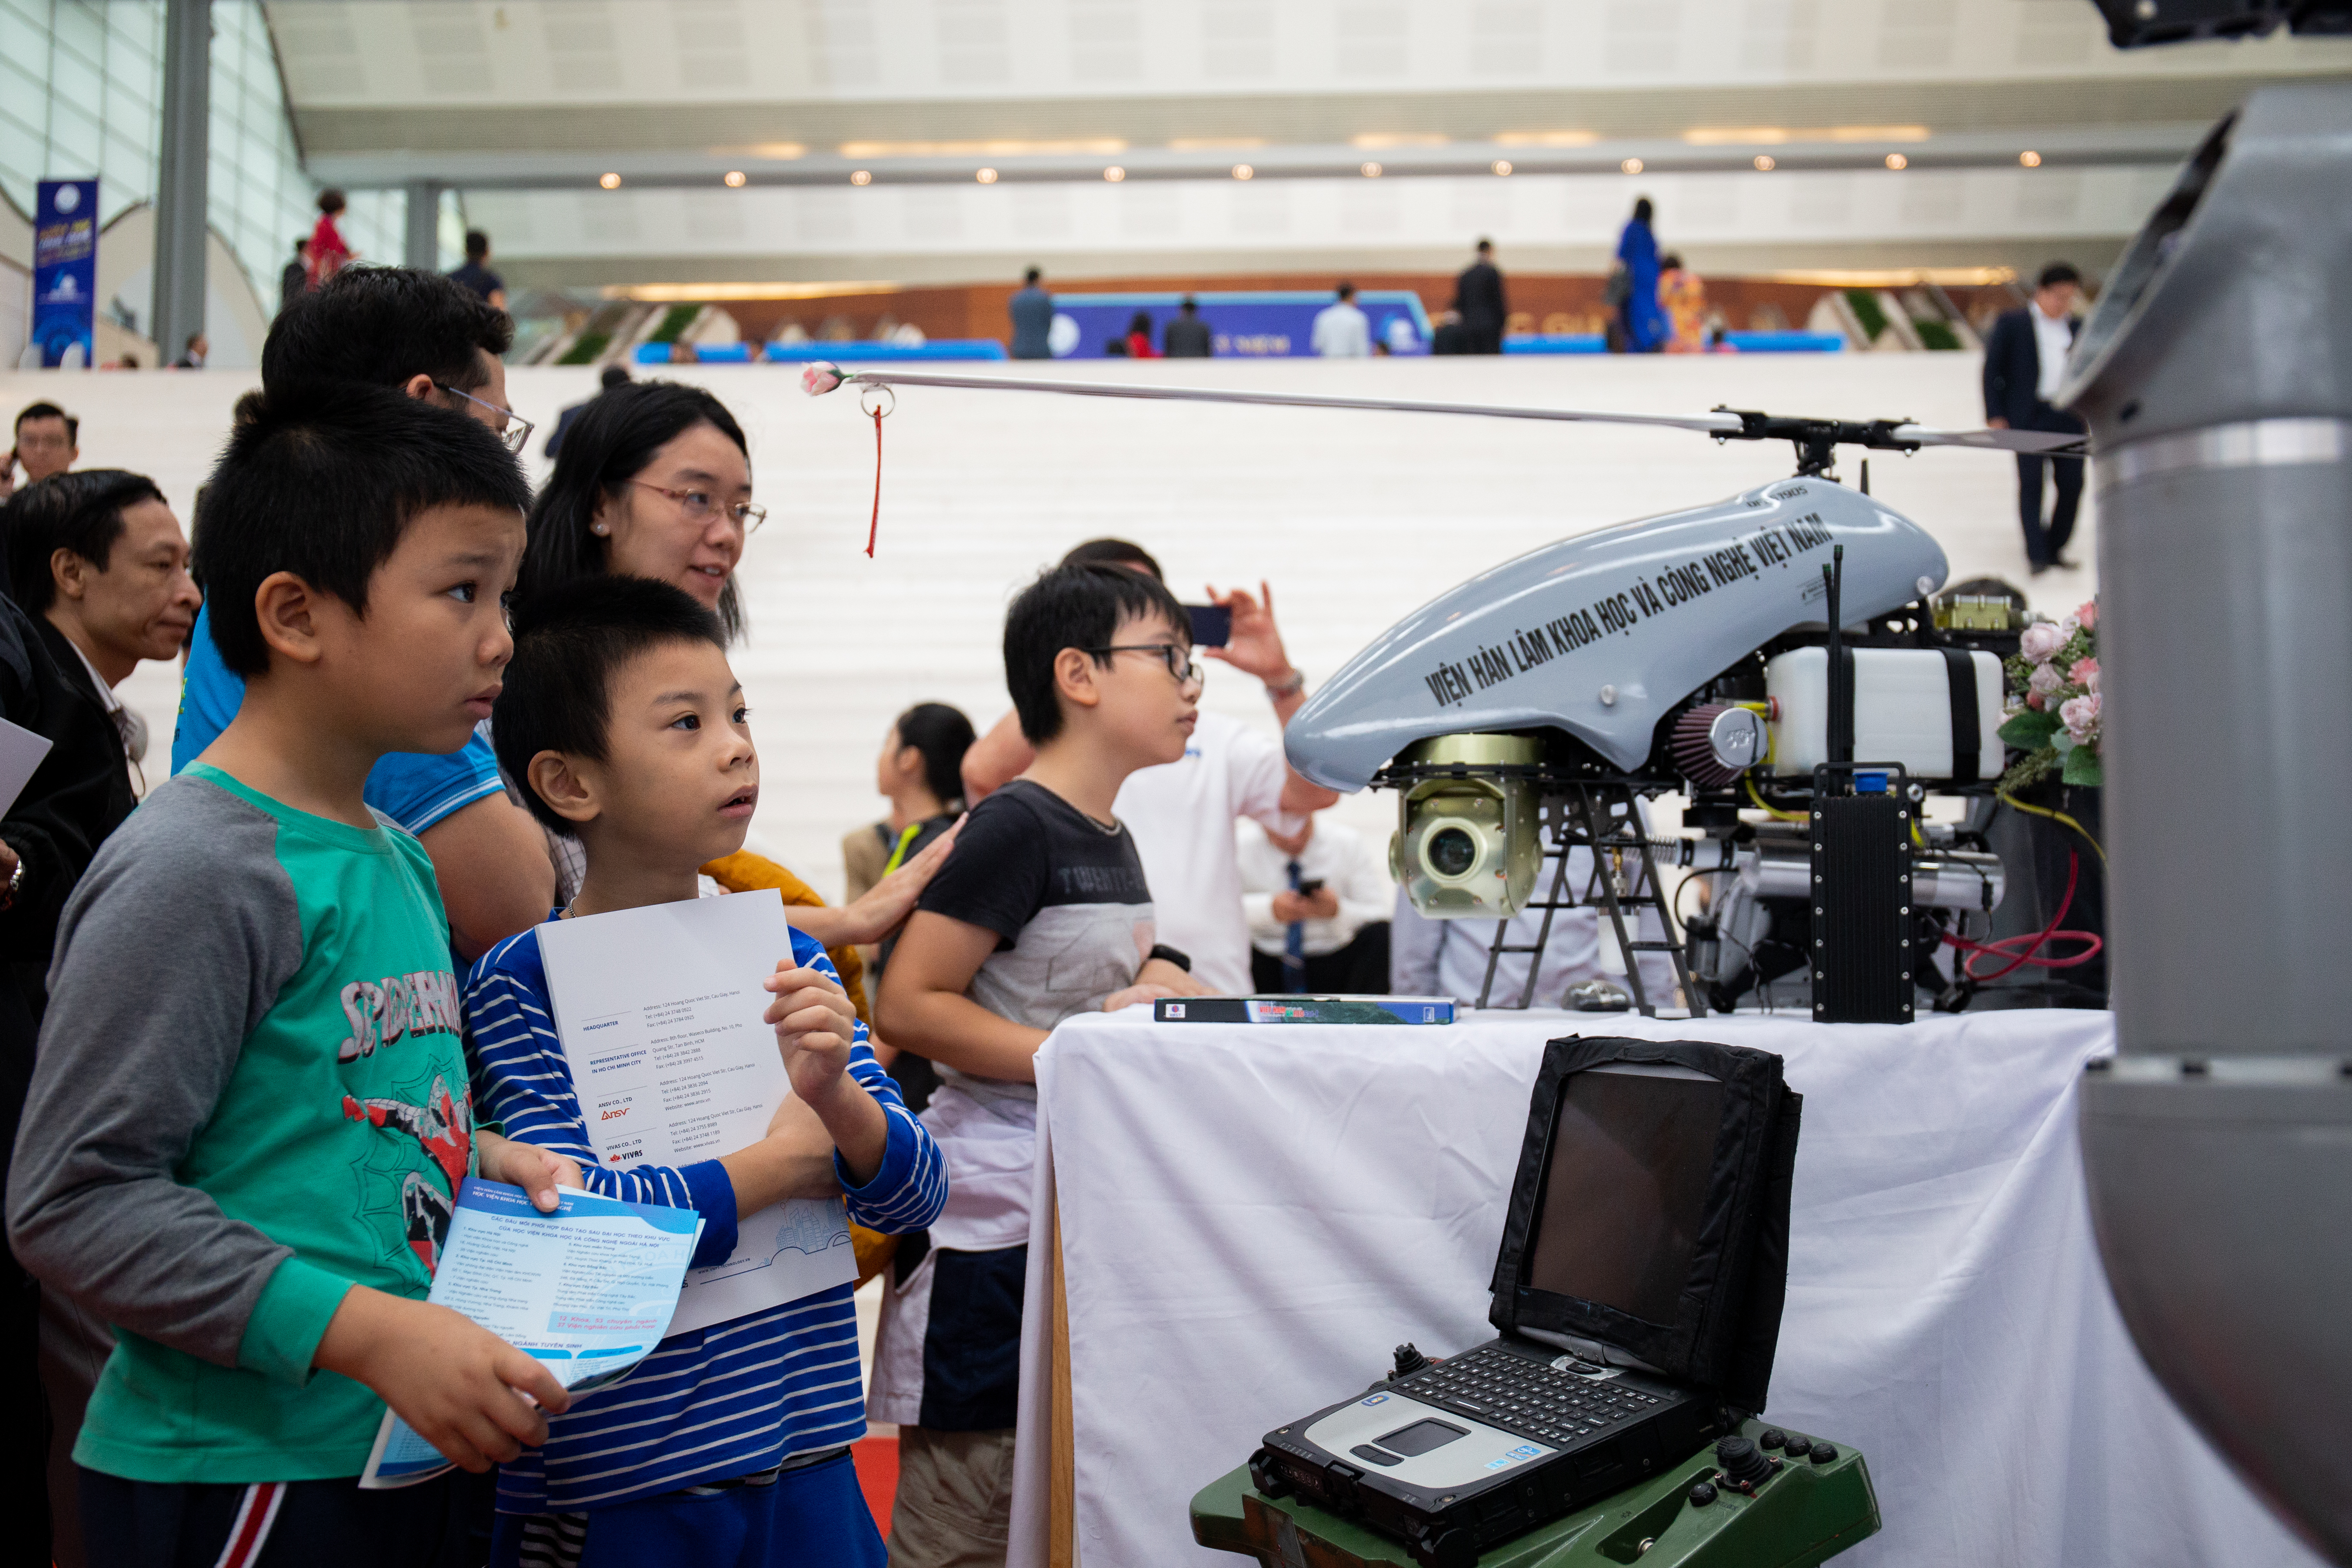 Máy bay điều khiển từ xa Dragonfly 26 ở gian hàng trưng bày của Viện Hàn lâm Khoa học và Công nghệ Việt Nam tại lễ kỷ niệm 60 năm thành lập Bộ Khoa học và Công nghệ. Ảnh: Hoàng Nam